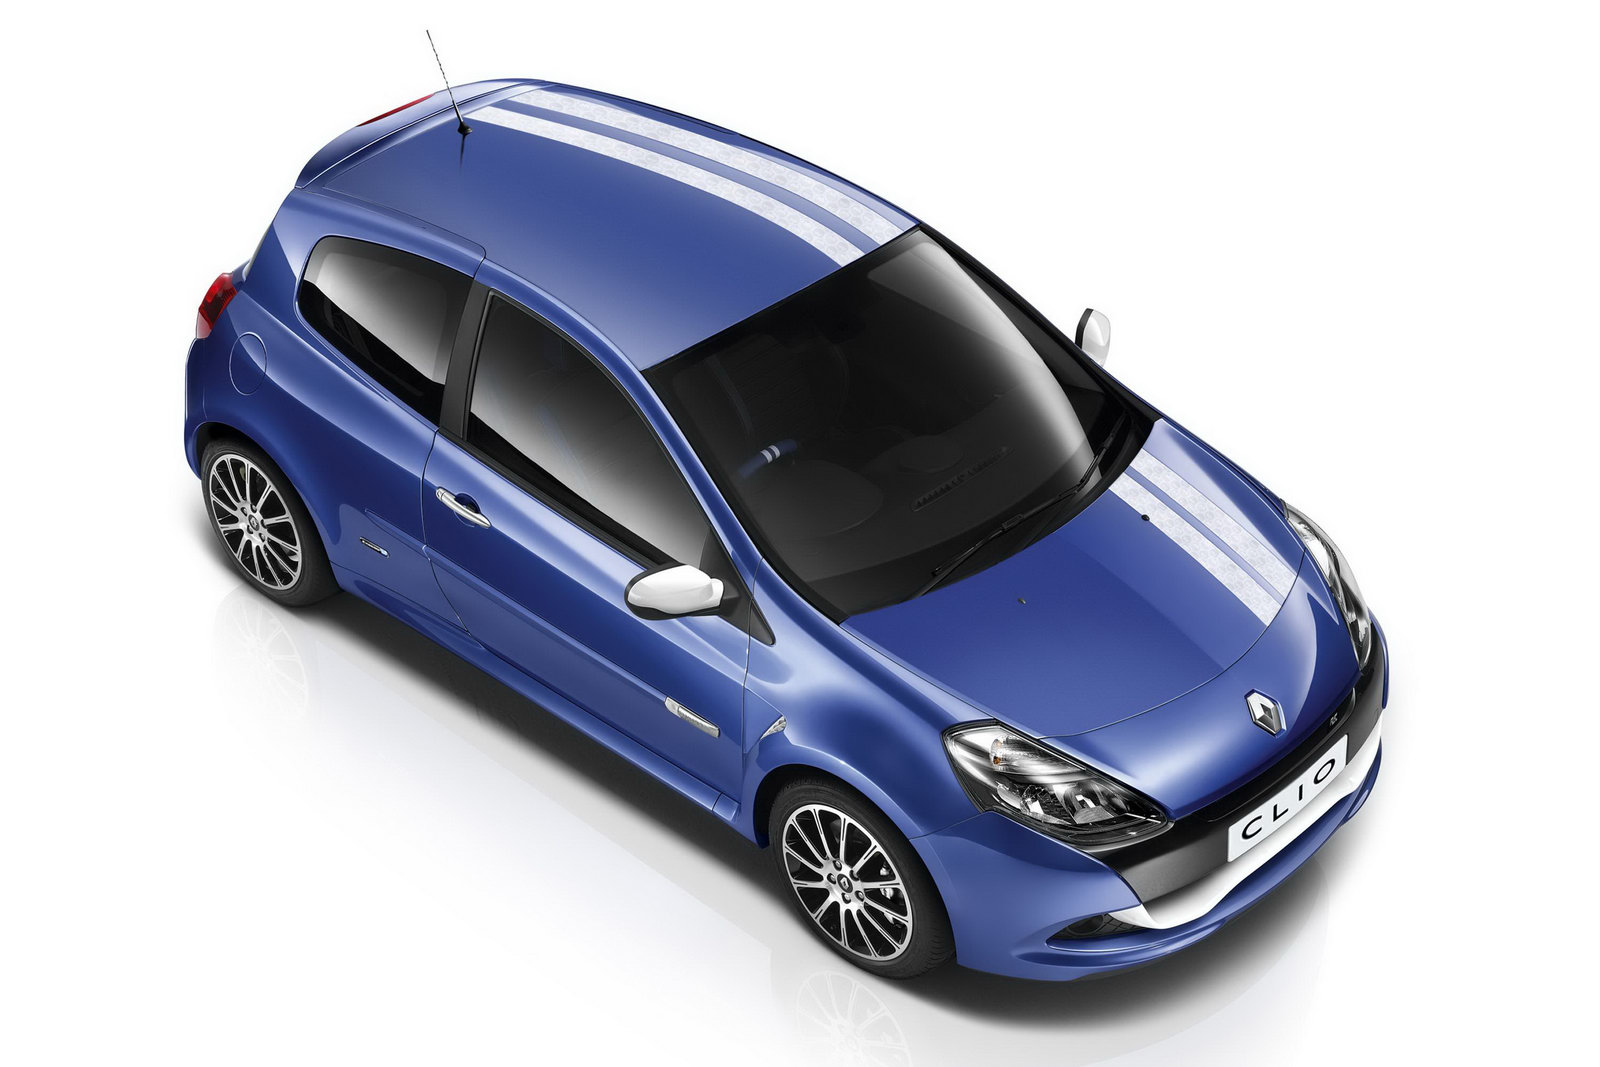 2010 Renault Clio Gordini £8,699